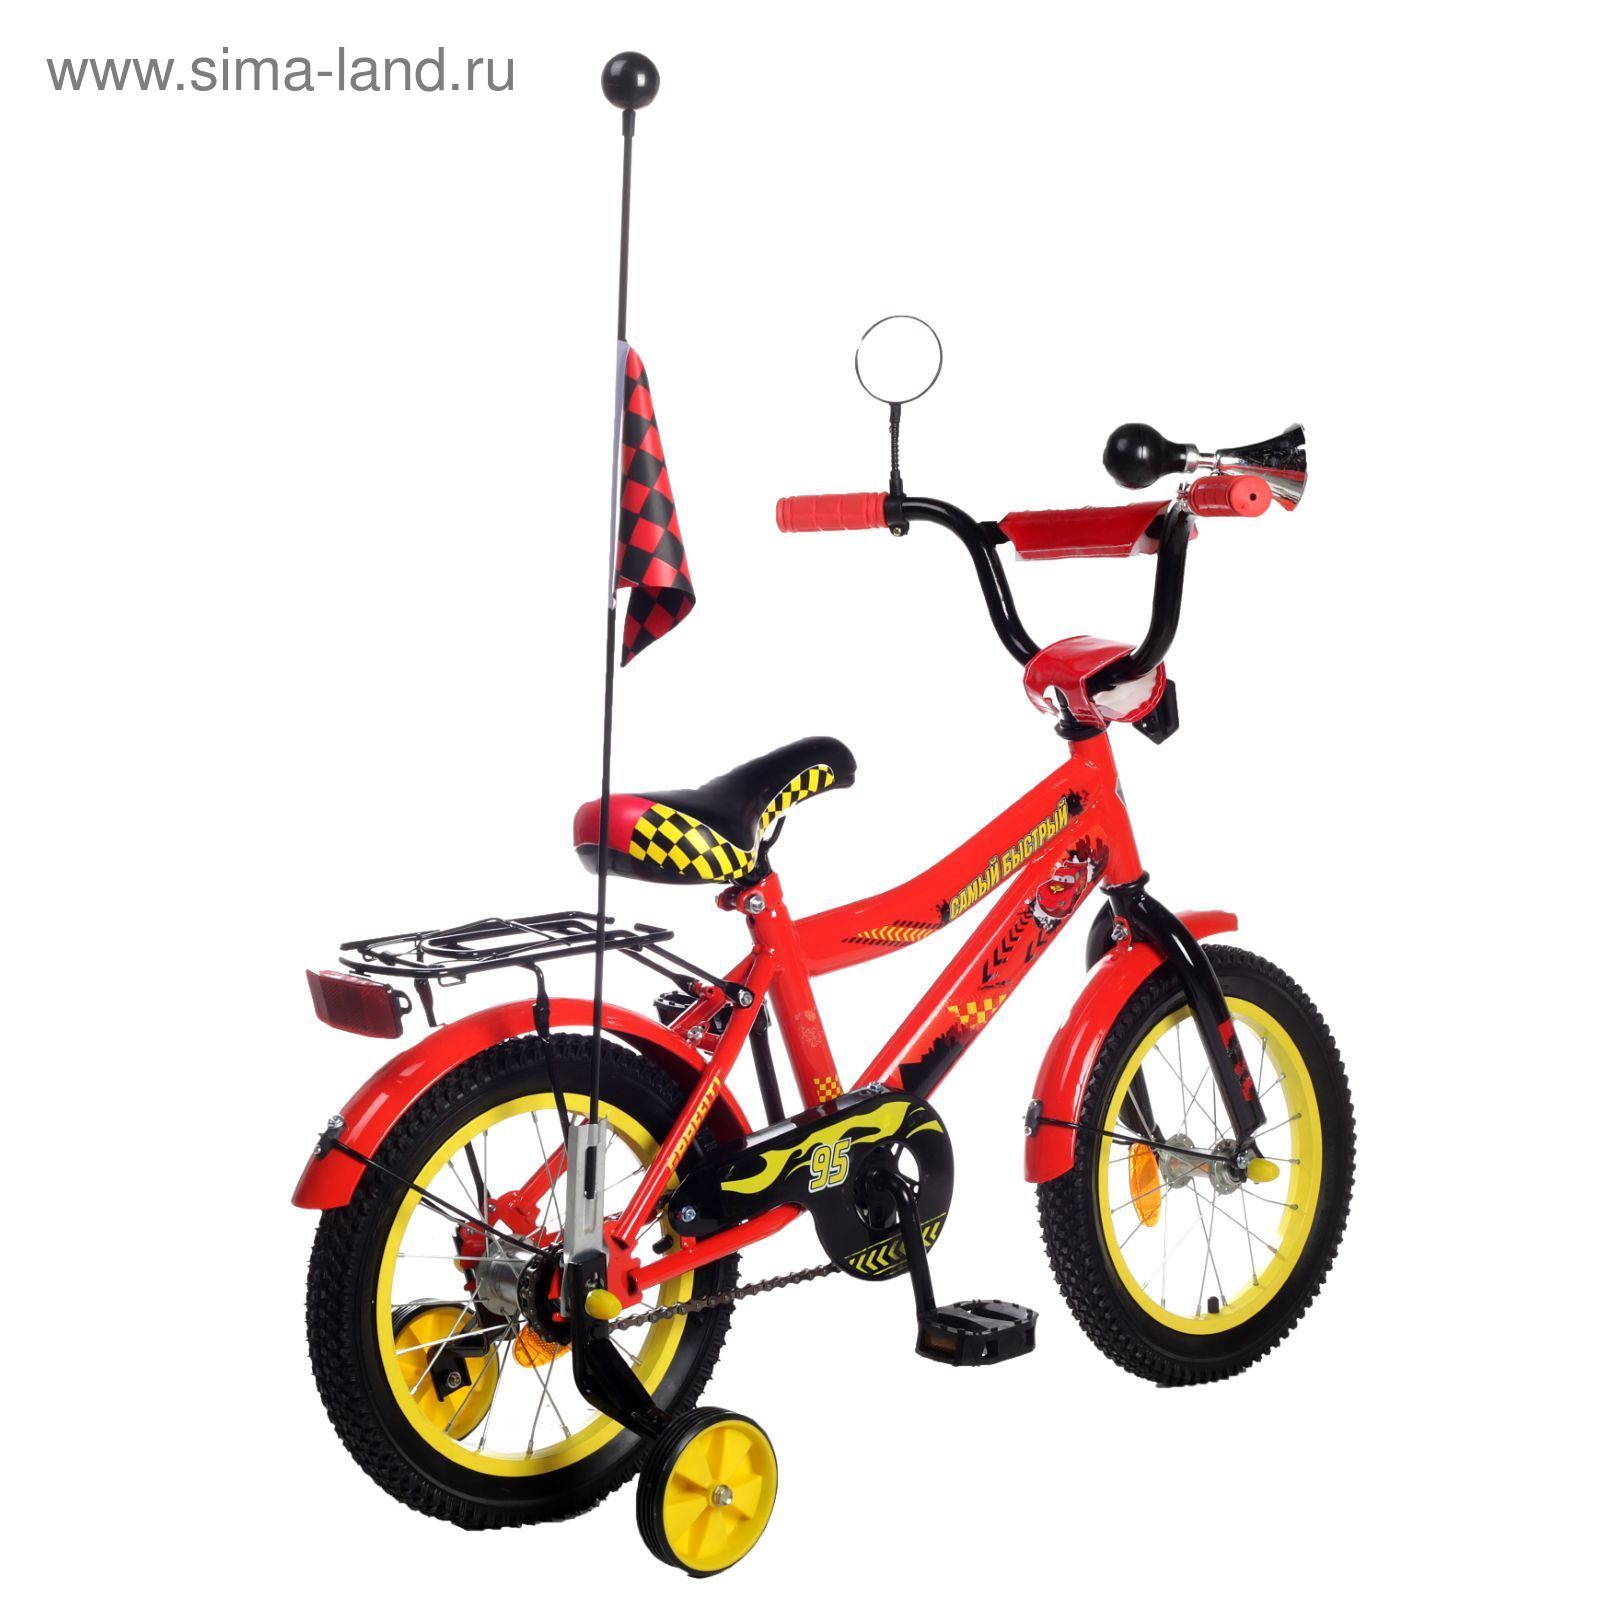 Велосипед двухколесный 14" GRAFFITI "ТАЧКИ", цвет: красный